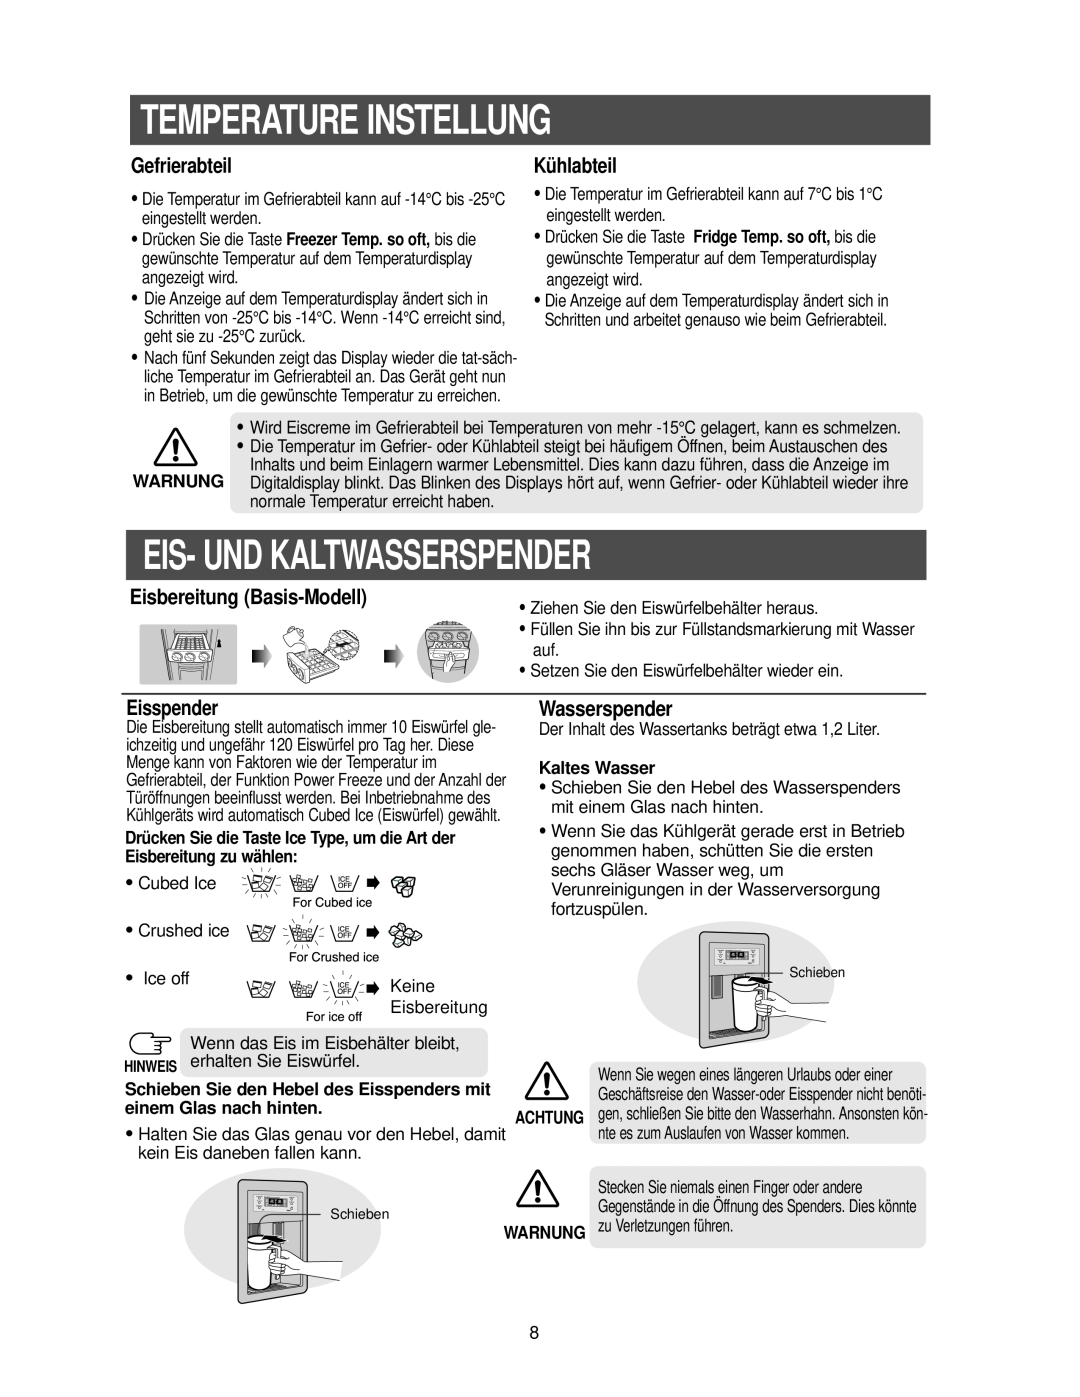 Samsung RS21FANS1/XEG manual Temperature Instellung, Eis- Und Kaltwasserspender, Gefrierabteil, Kühlabteil, Eisspender 